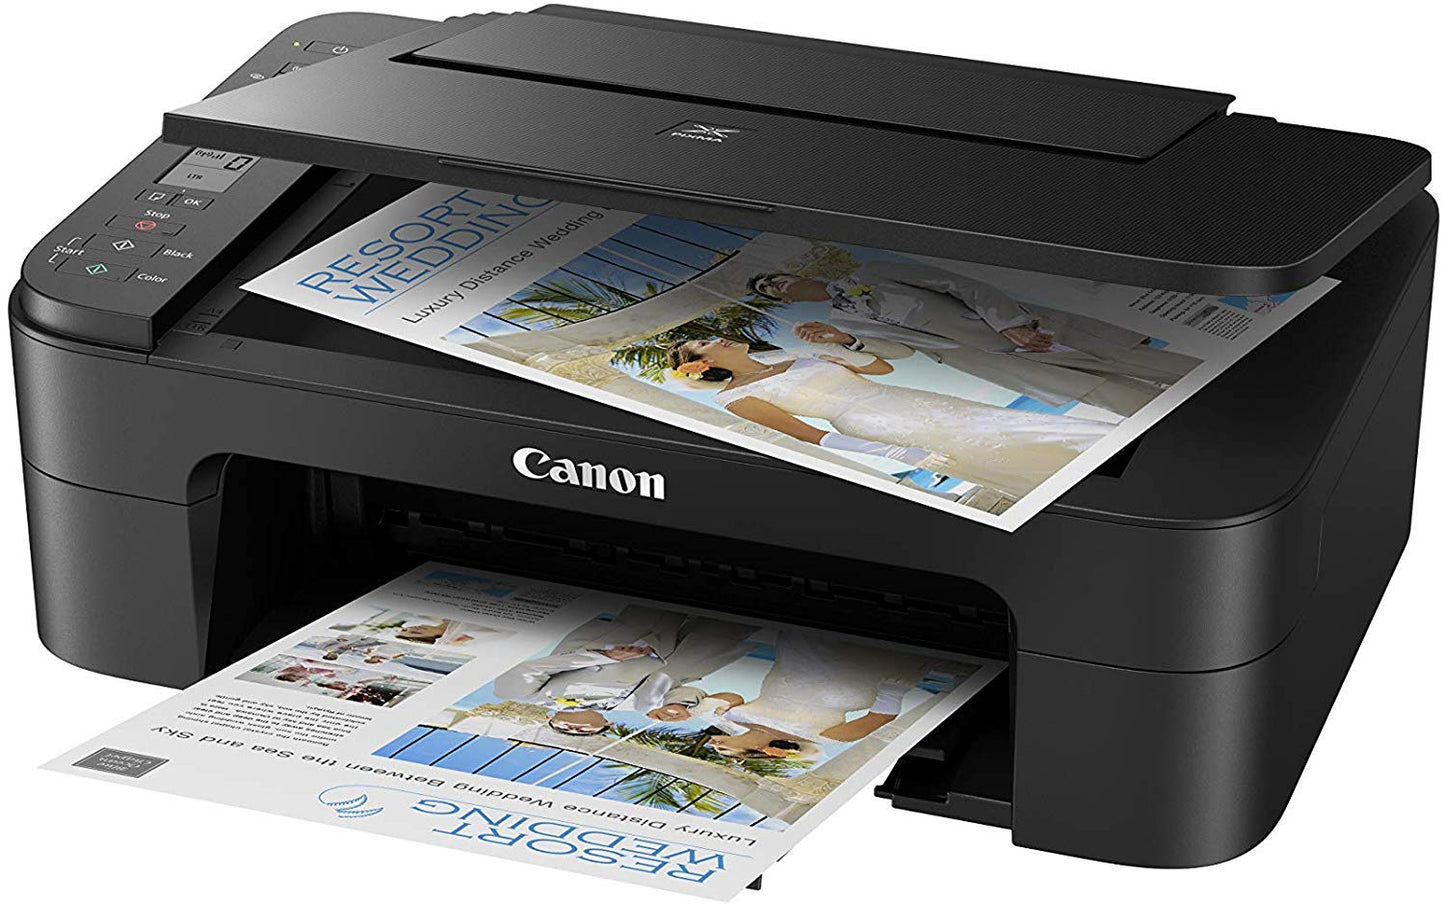 Canon PIXMA TS3350 Wireless Colour All in One Inkjet Photo Printer, Black